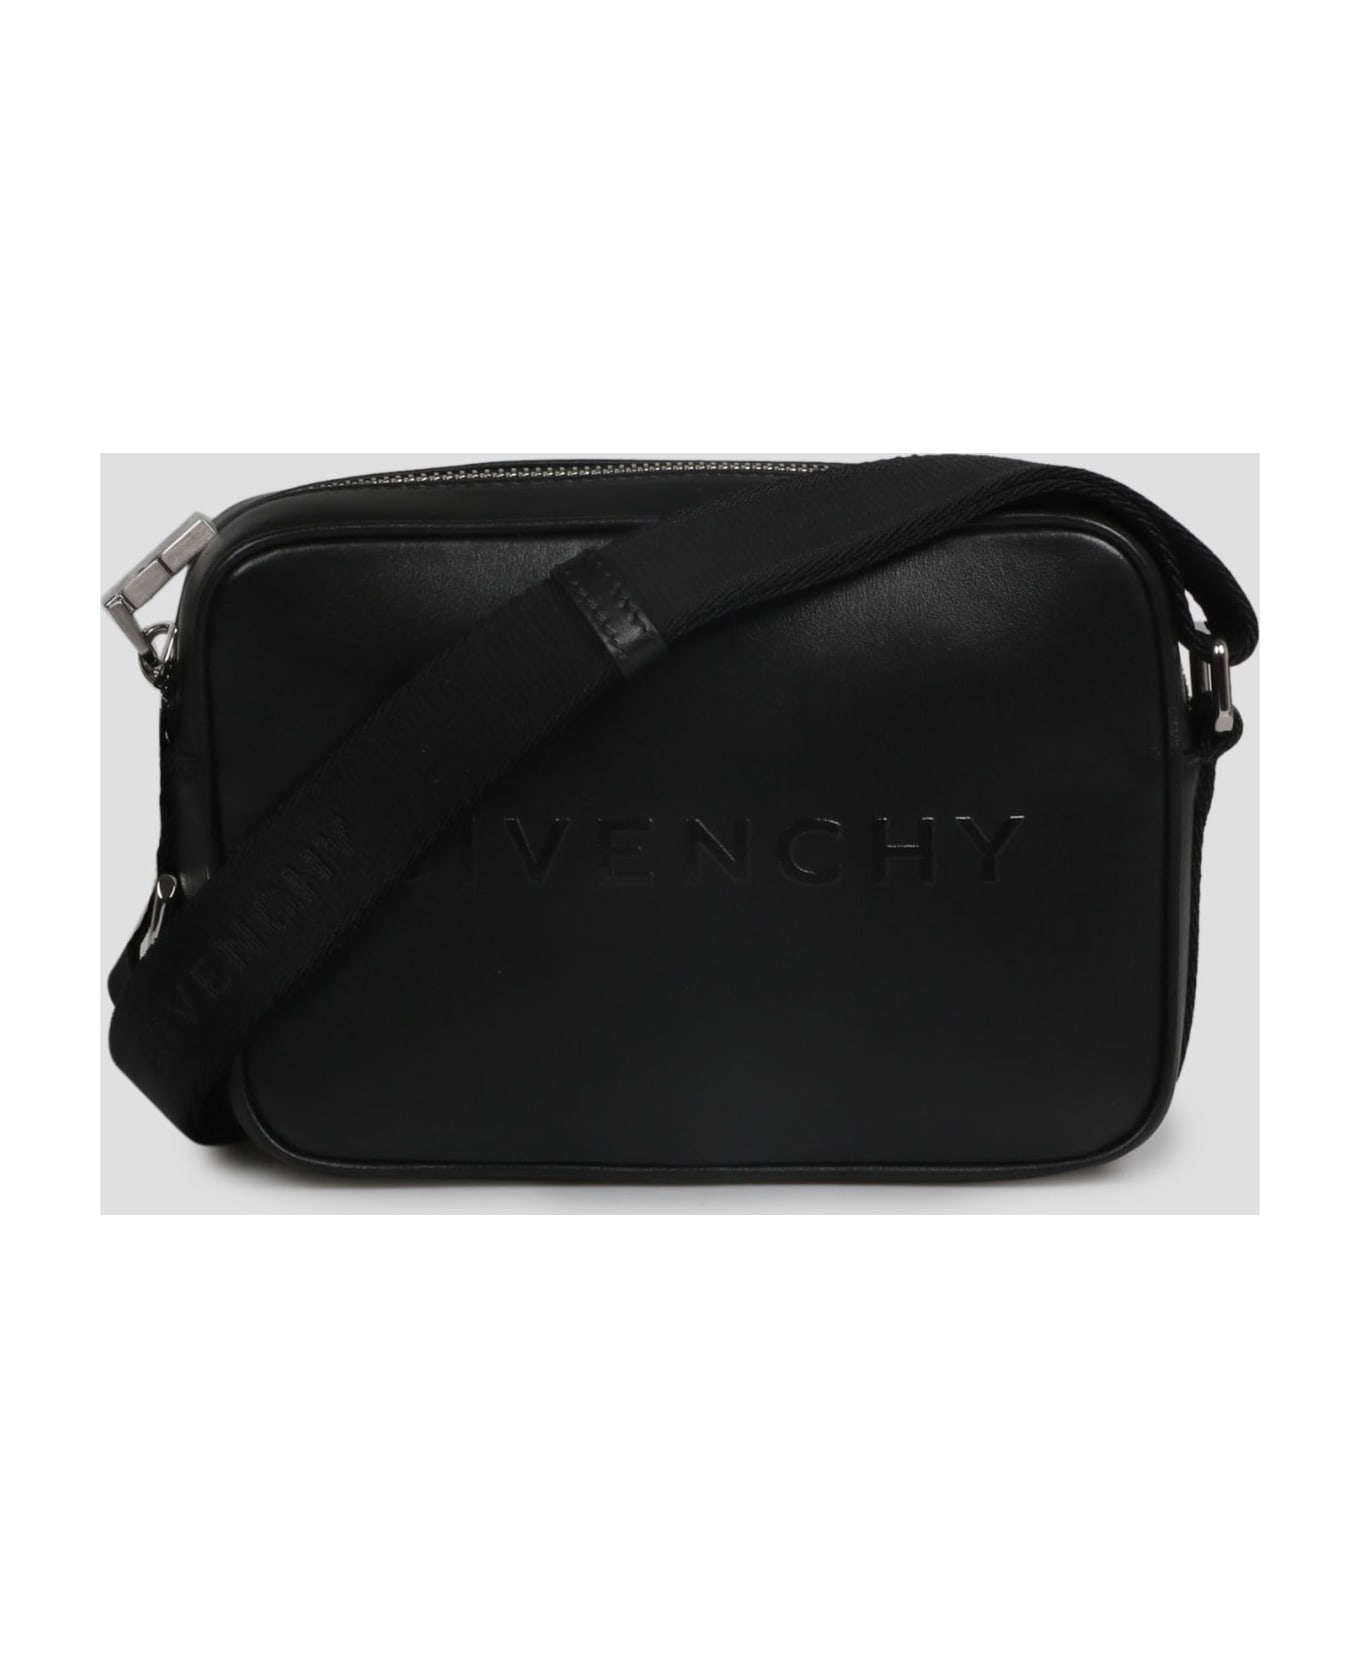 Givenchy Camera Bag - Black